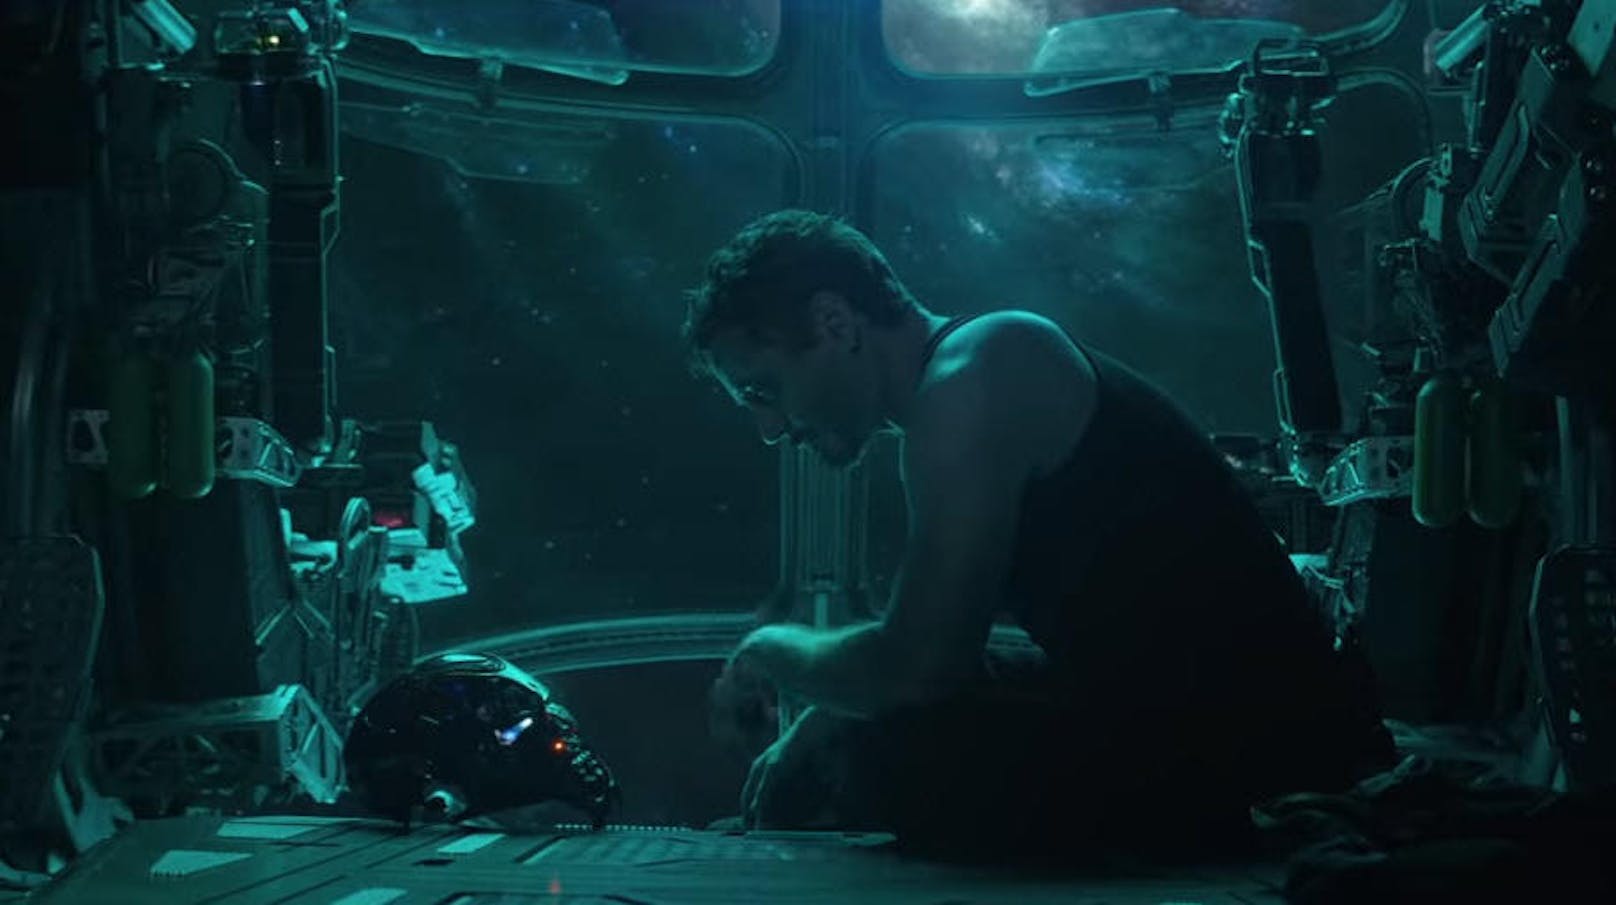 AVENGERS: ENDGAME. Fortsetzung von "Infinity War". Bösewicht Thanos hat die Hälfte aller Lebewesen im Universum ausgelöscht. Iron Man (Robert Downey Jr.) und Co. trauern um ihre verlorenen KameradInnen und versuchen, das Geschehene rückgängig zu machen. 

Kinostart: 25. April